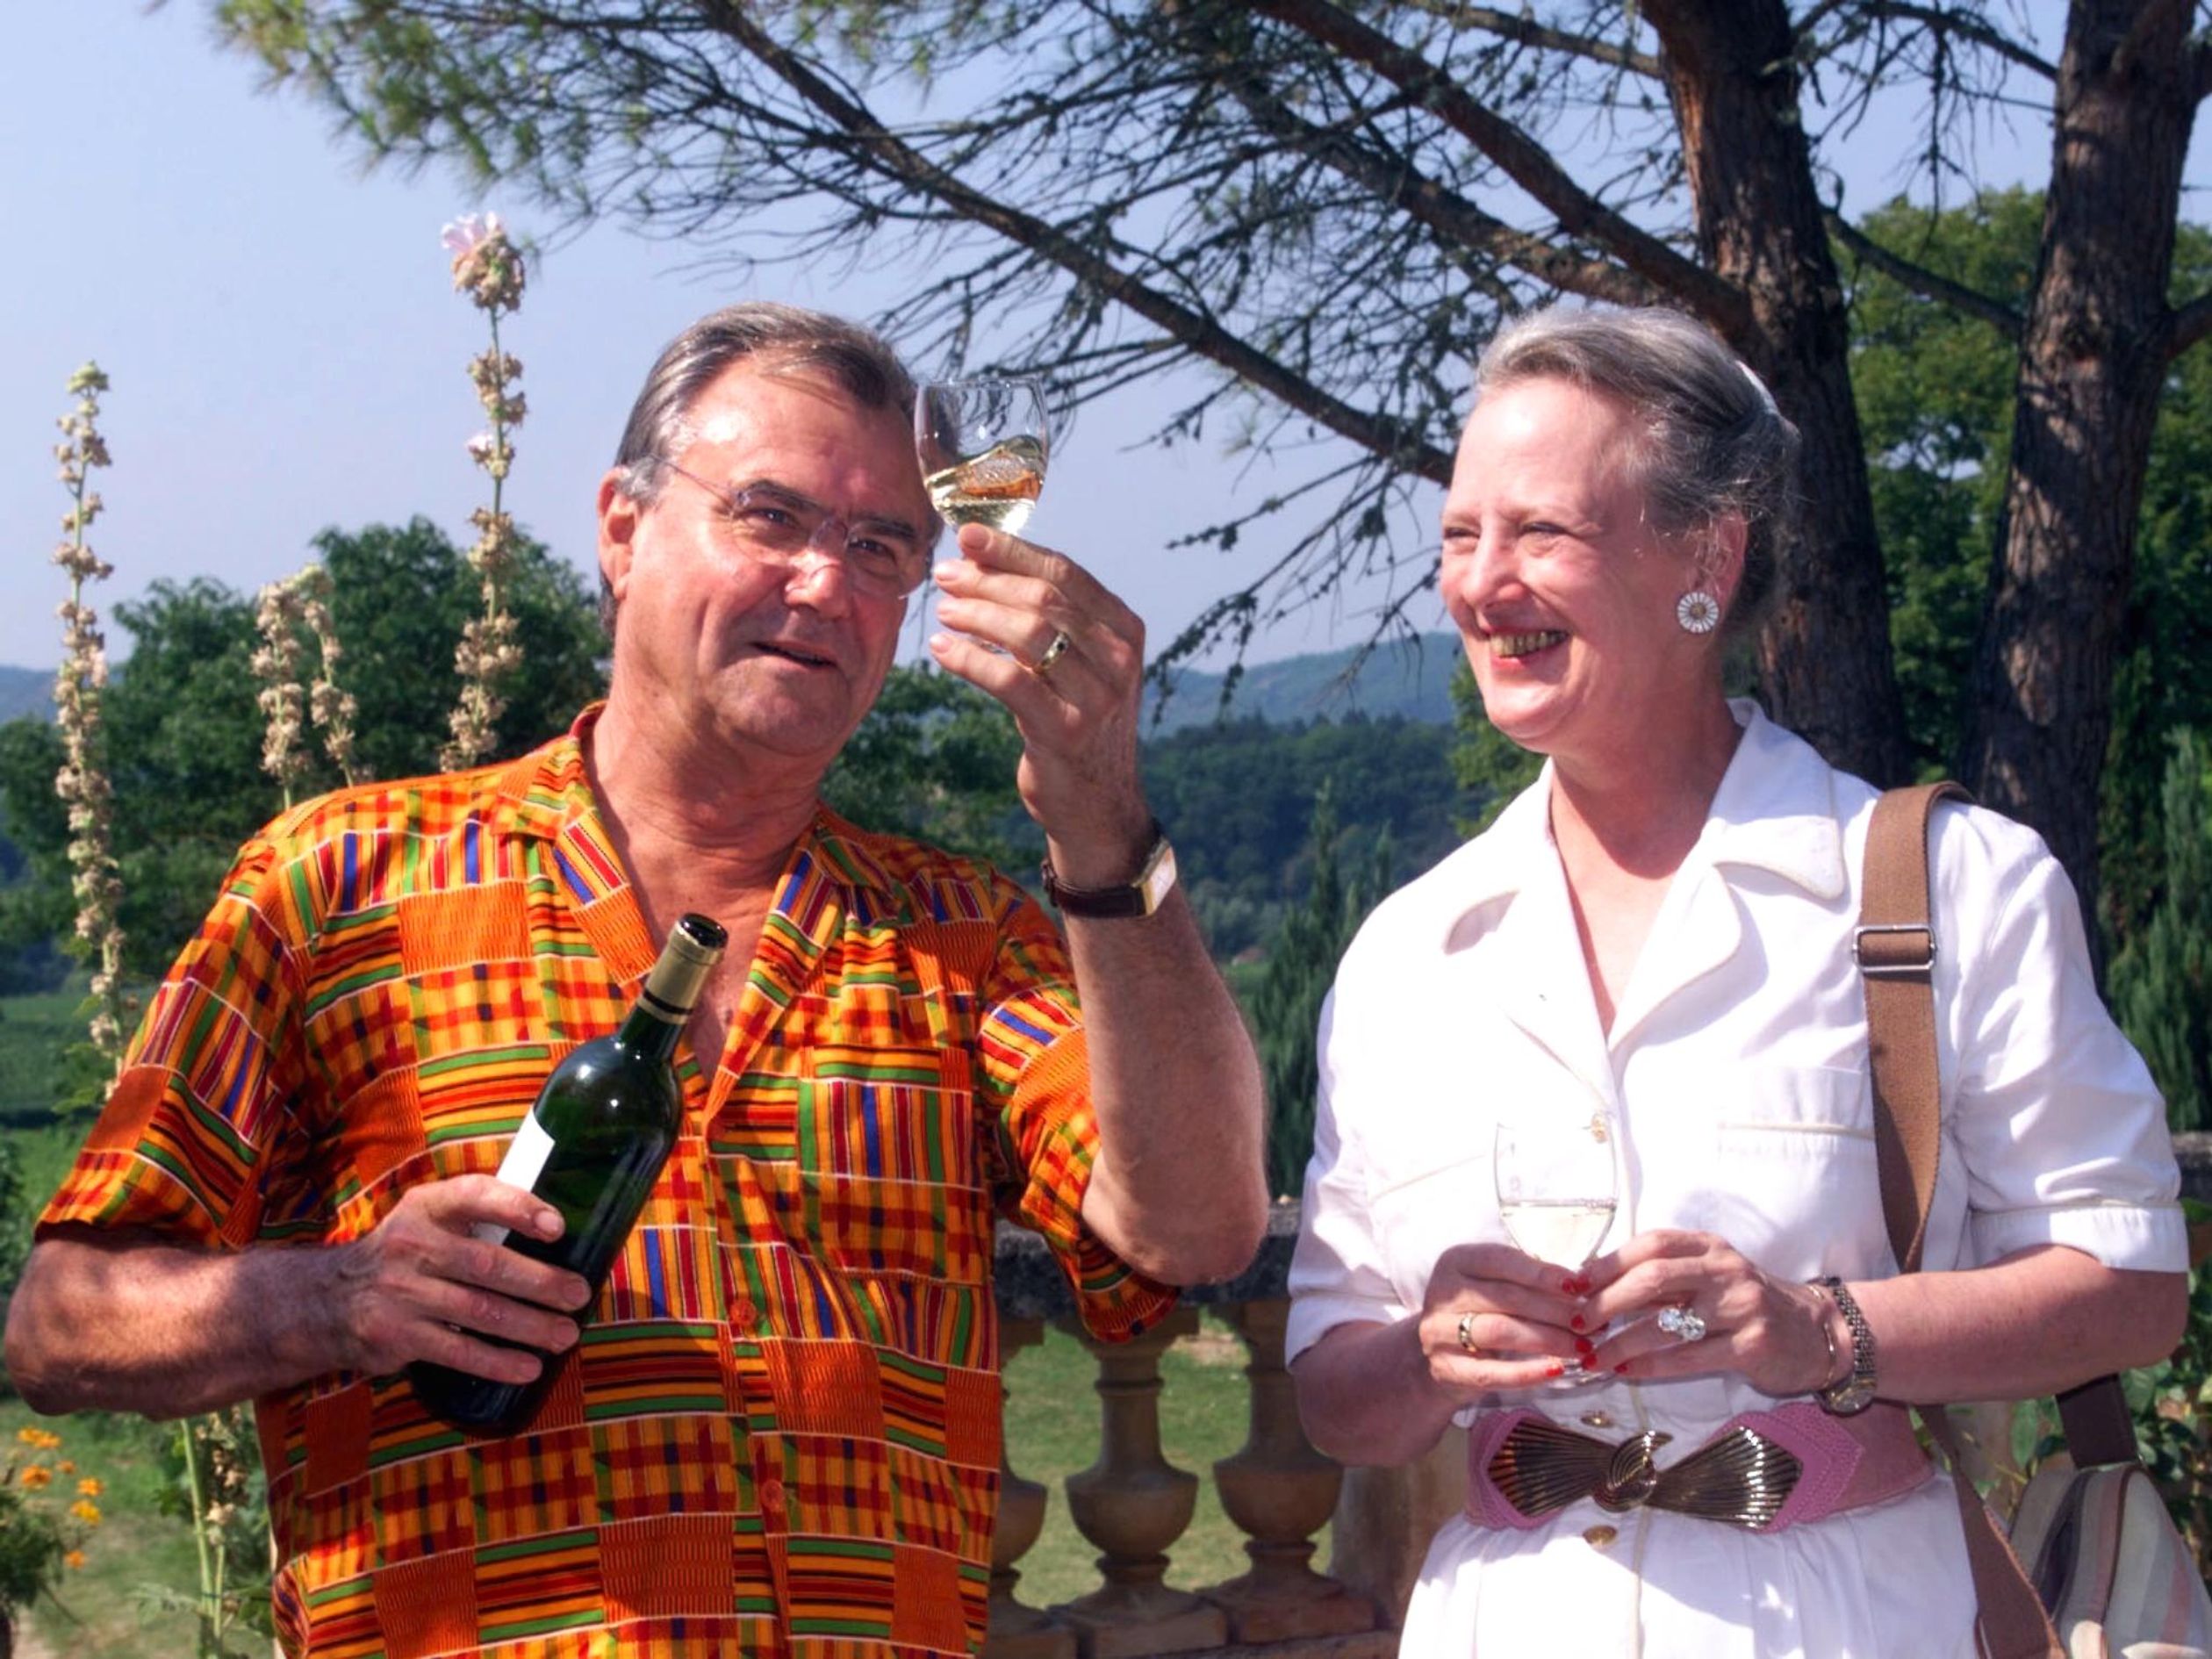 Cheers! Margrethe houdt wel van een drankje. Hier drinkt ze er een met haar man Henrik in Frankrijk.